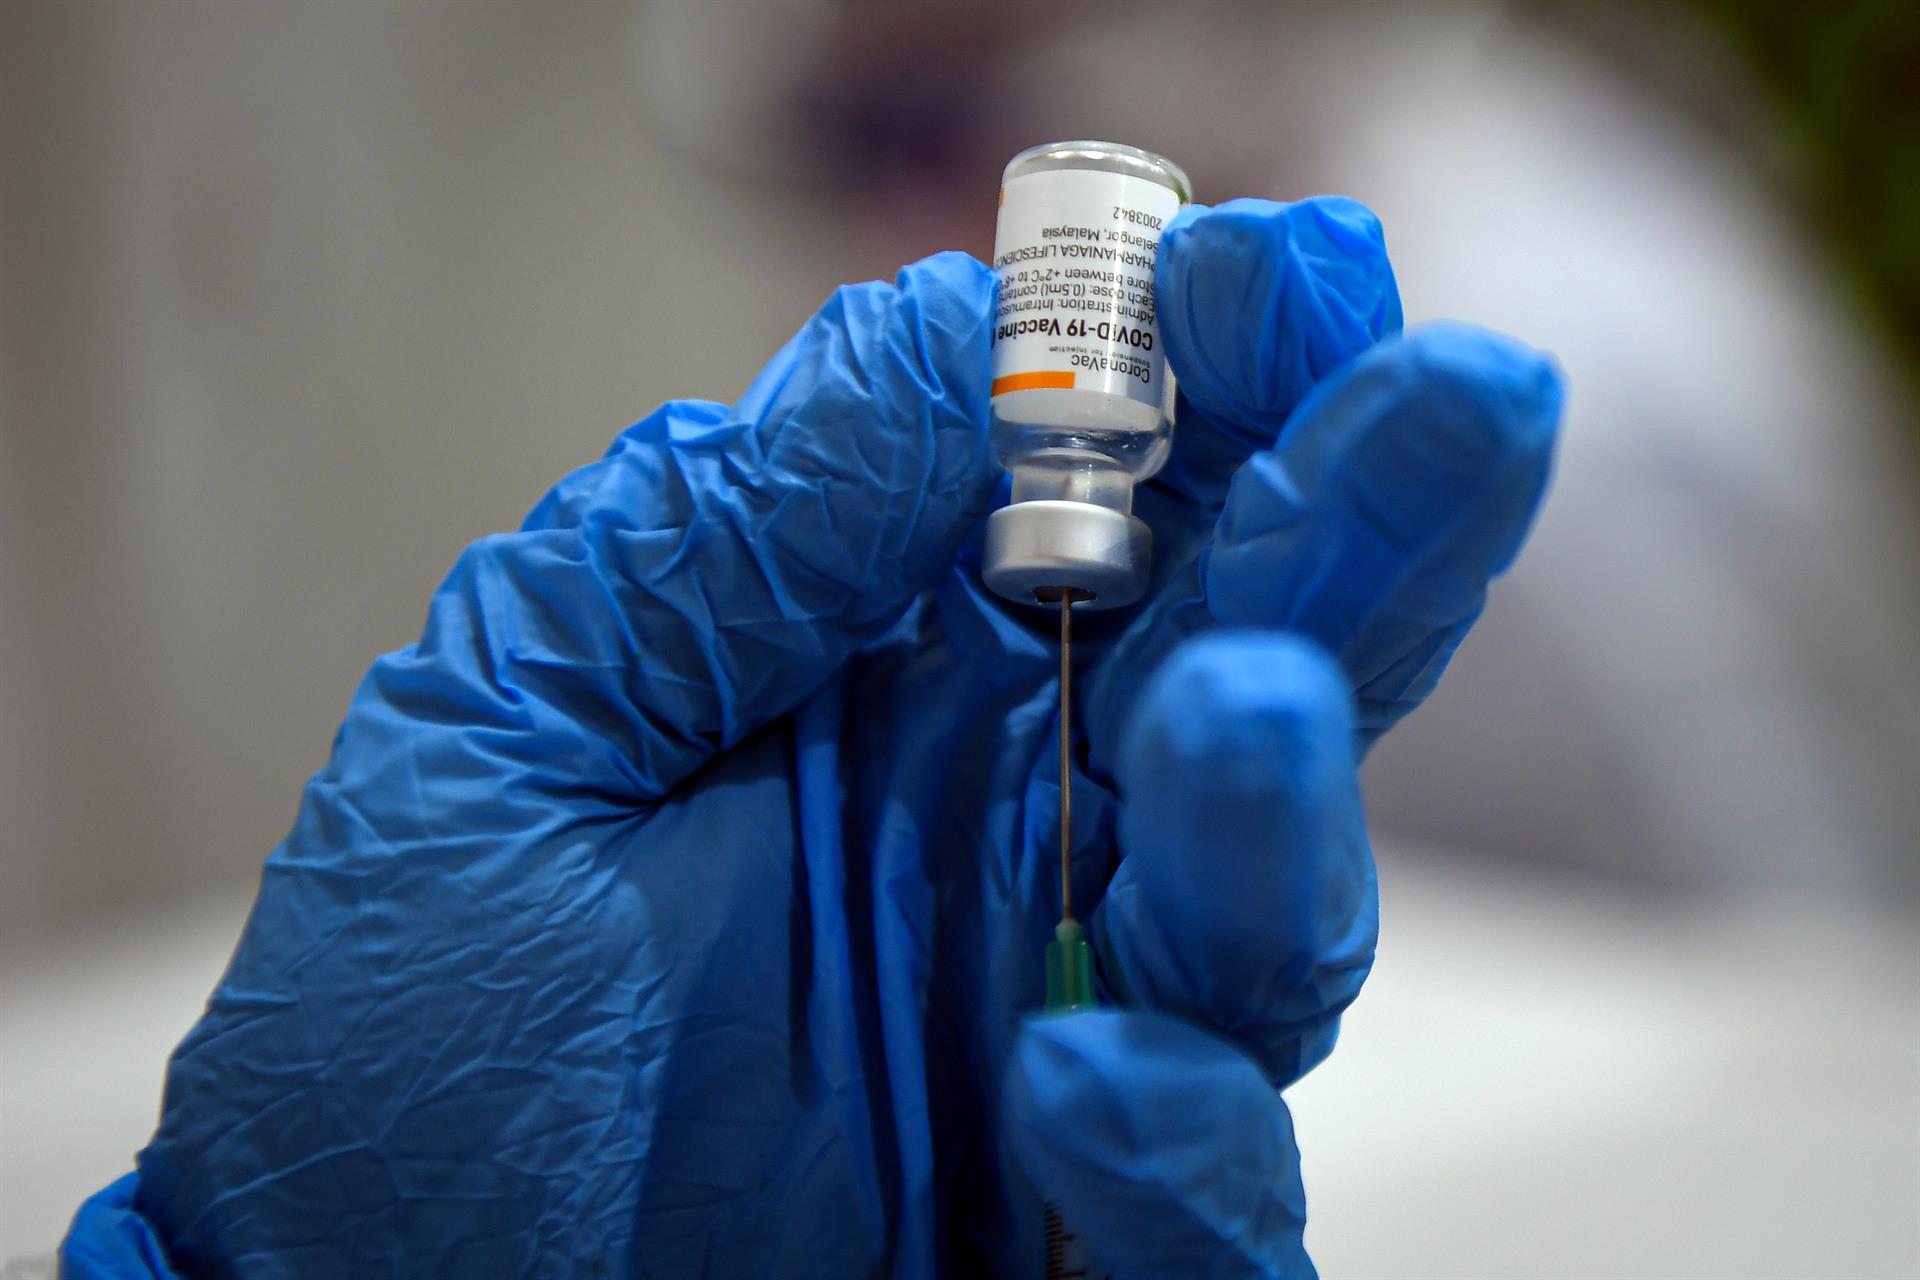 CALLE LARGA: 22 Personas fueron inoculadas por error con doble dosis de vacuna Sinovac